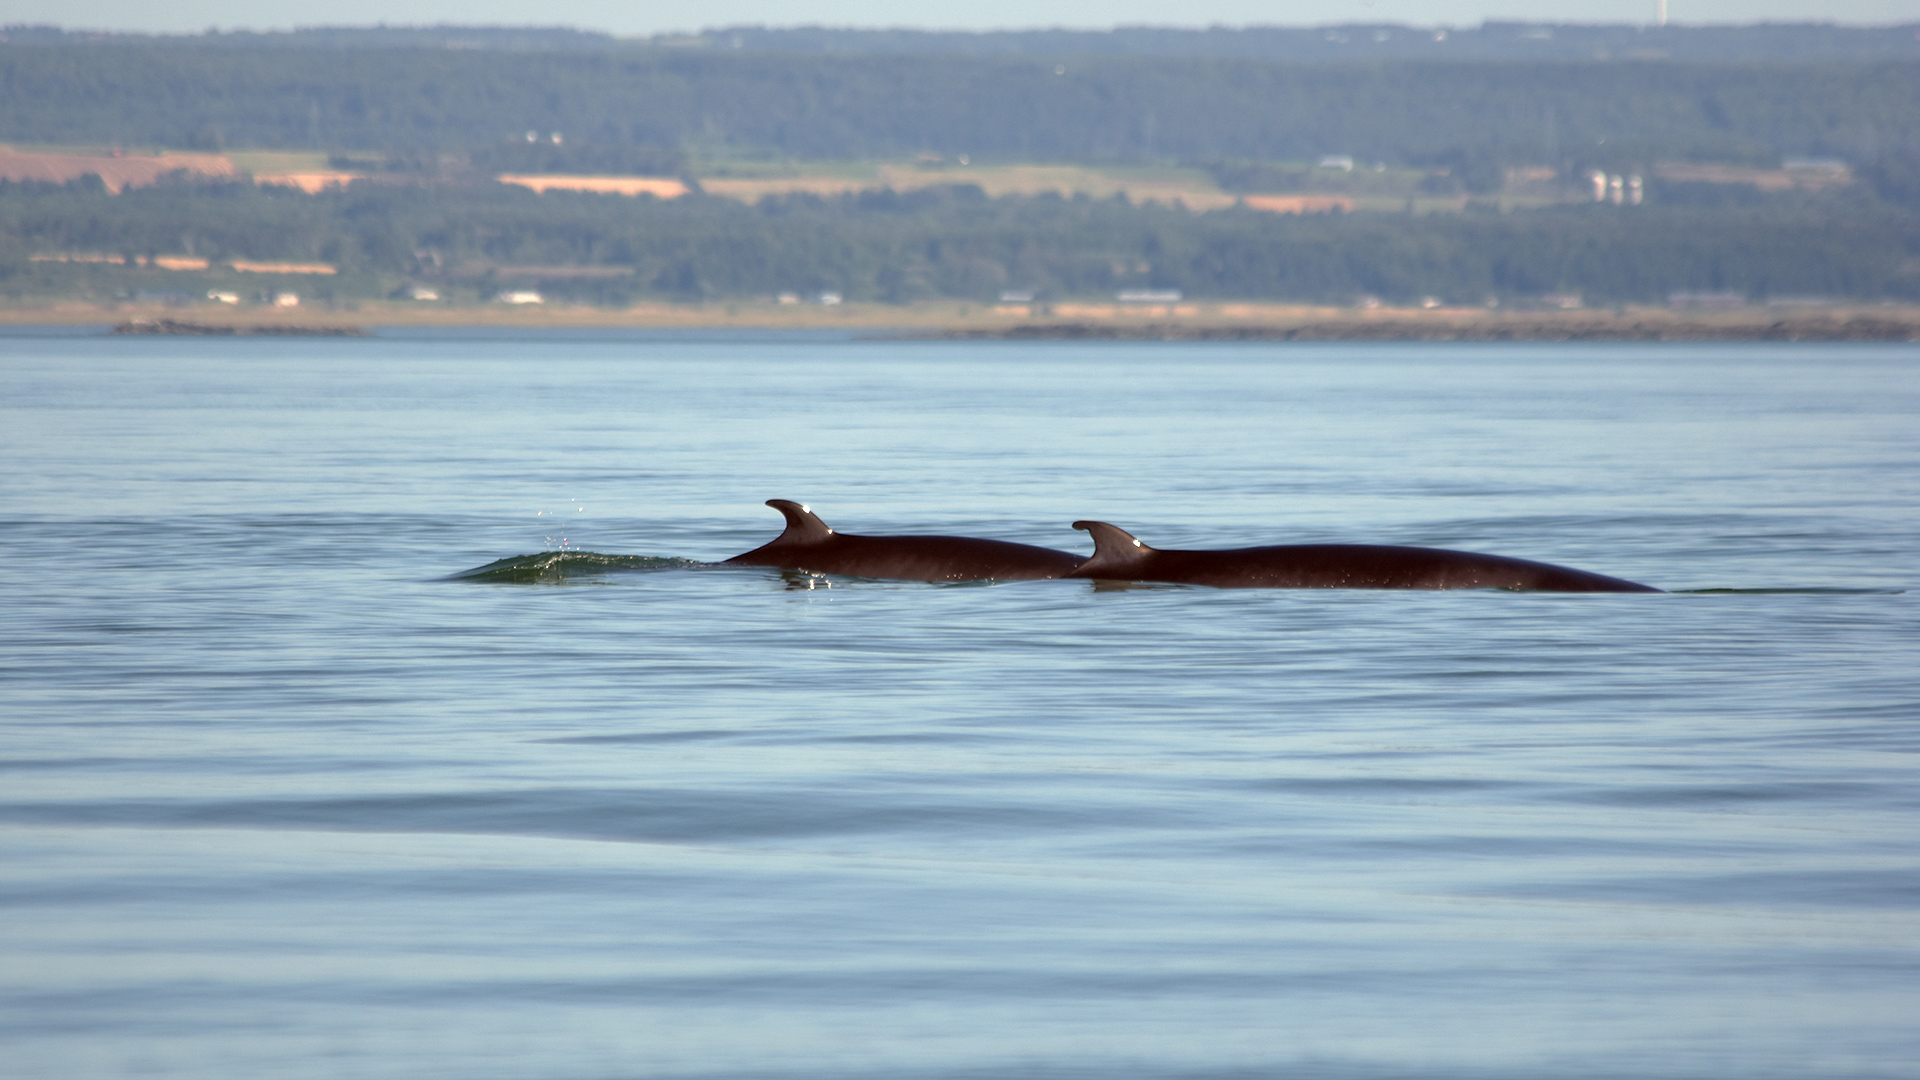 Two minke whales swim side by side.